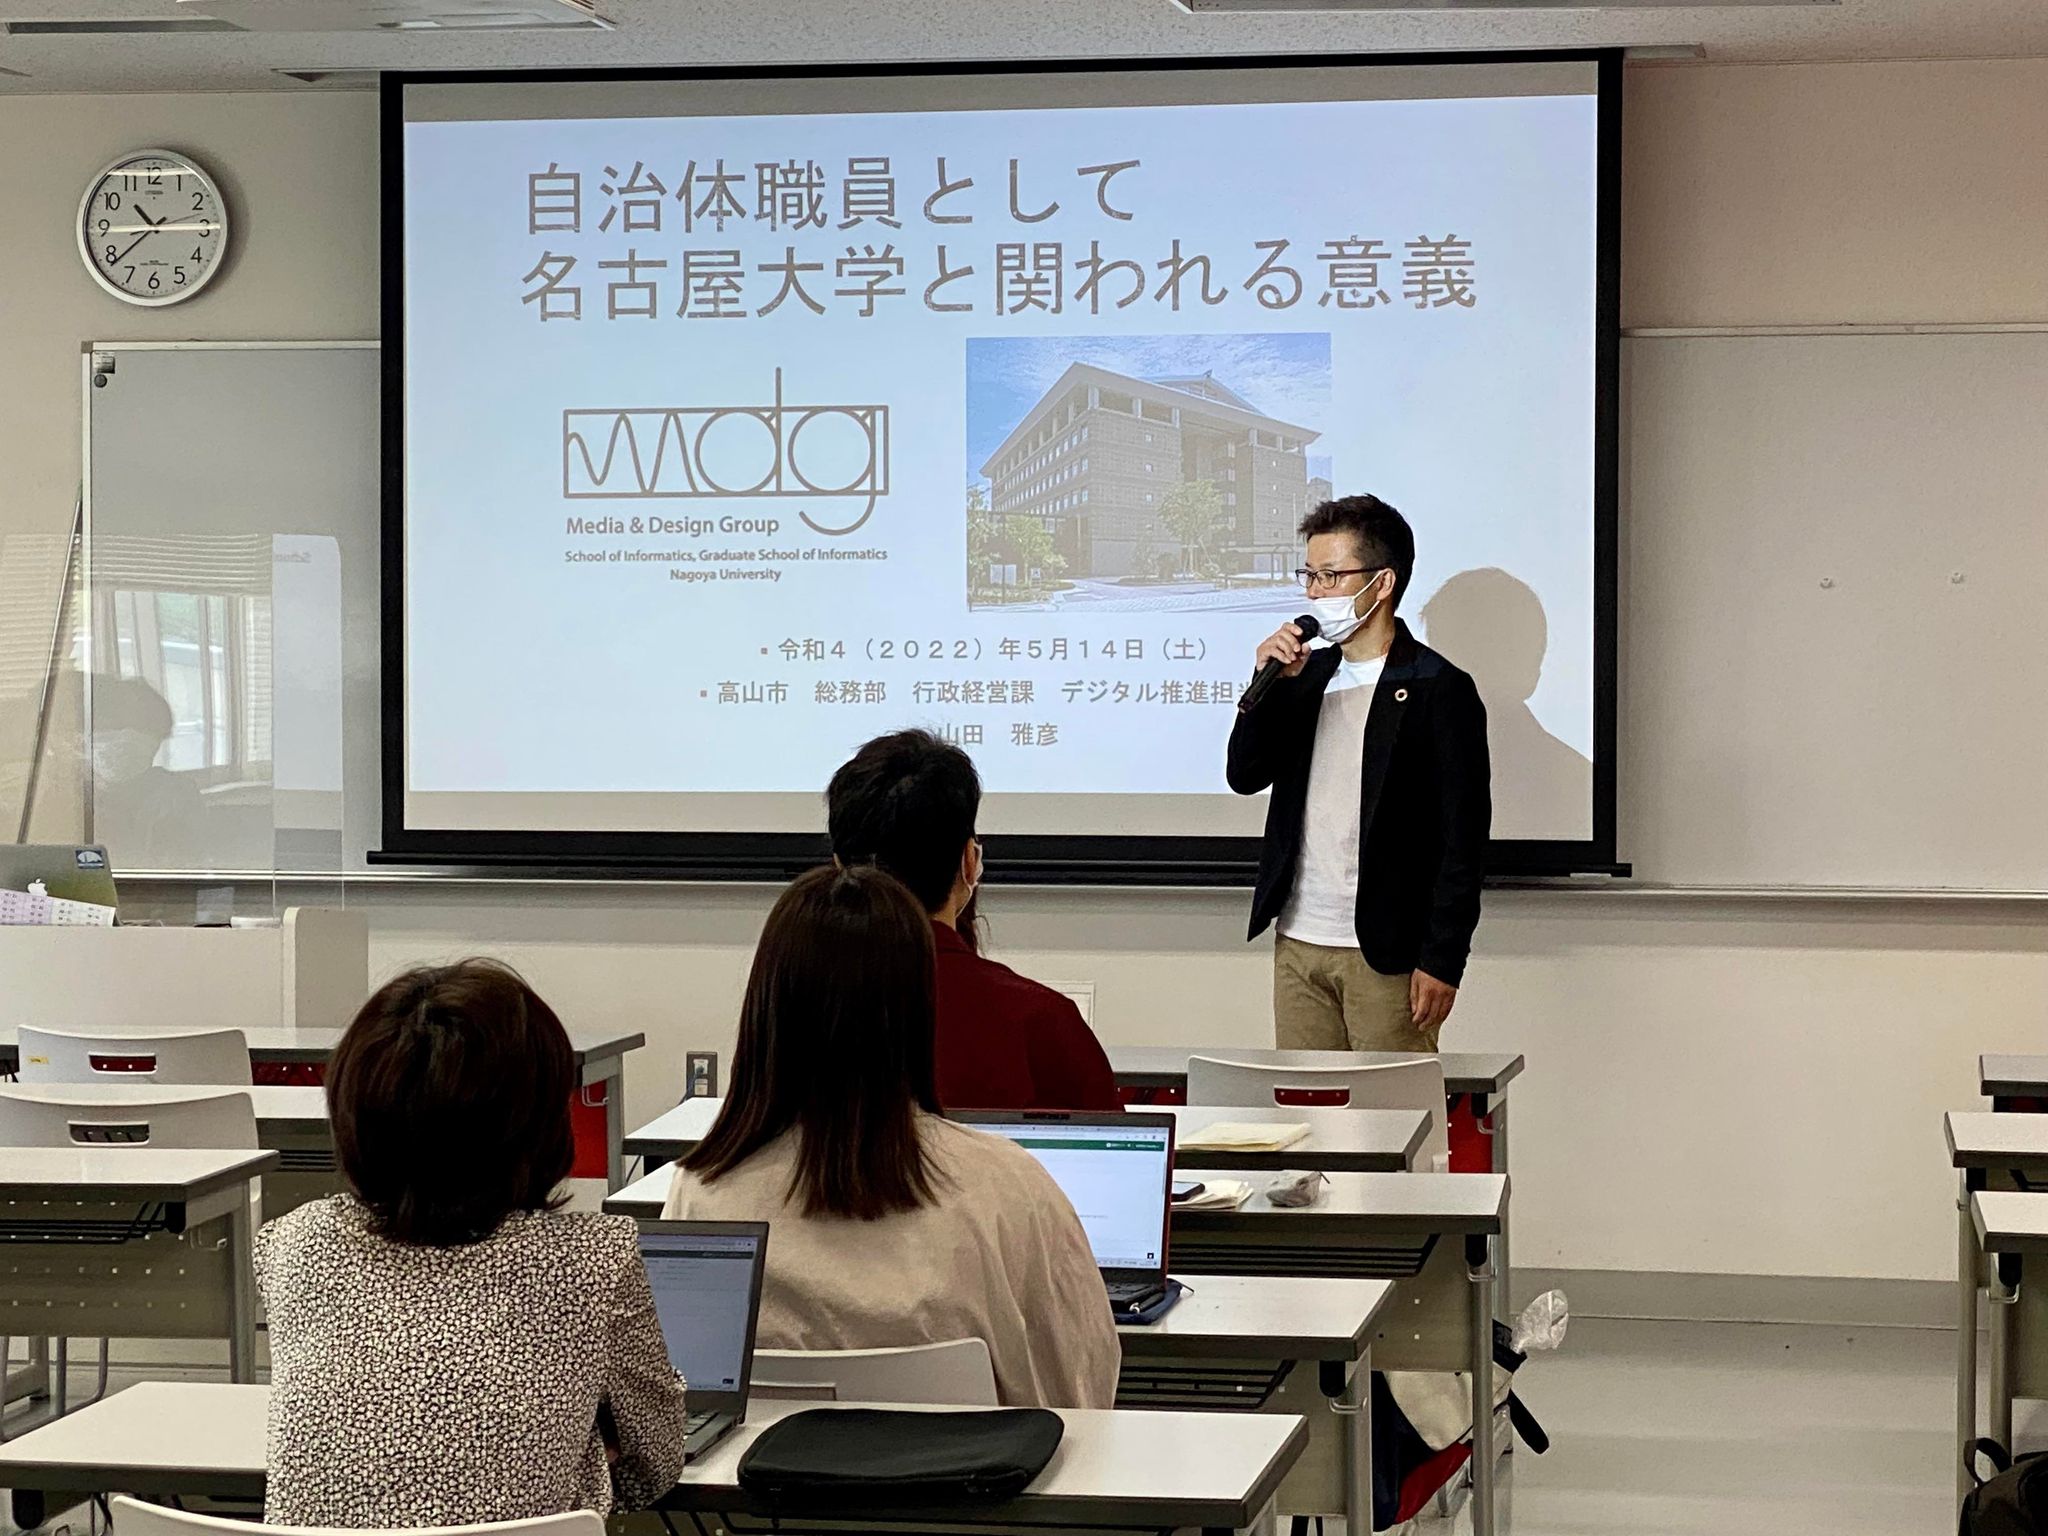 岐阜県高山市の山田様に情報学部で特別講義を行っていただきました。